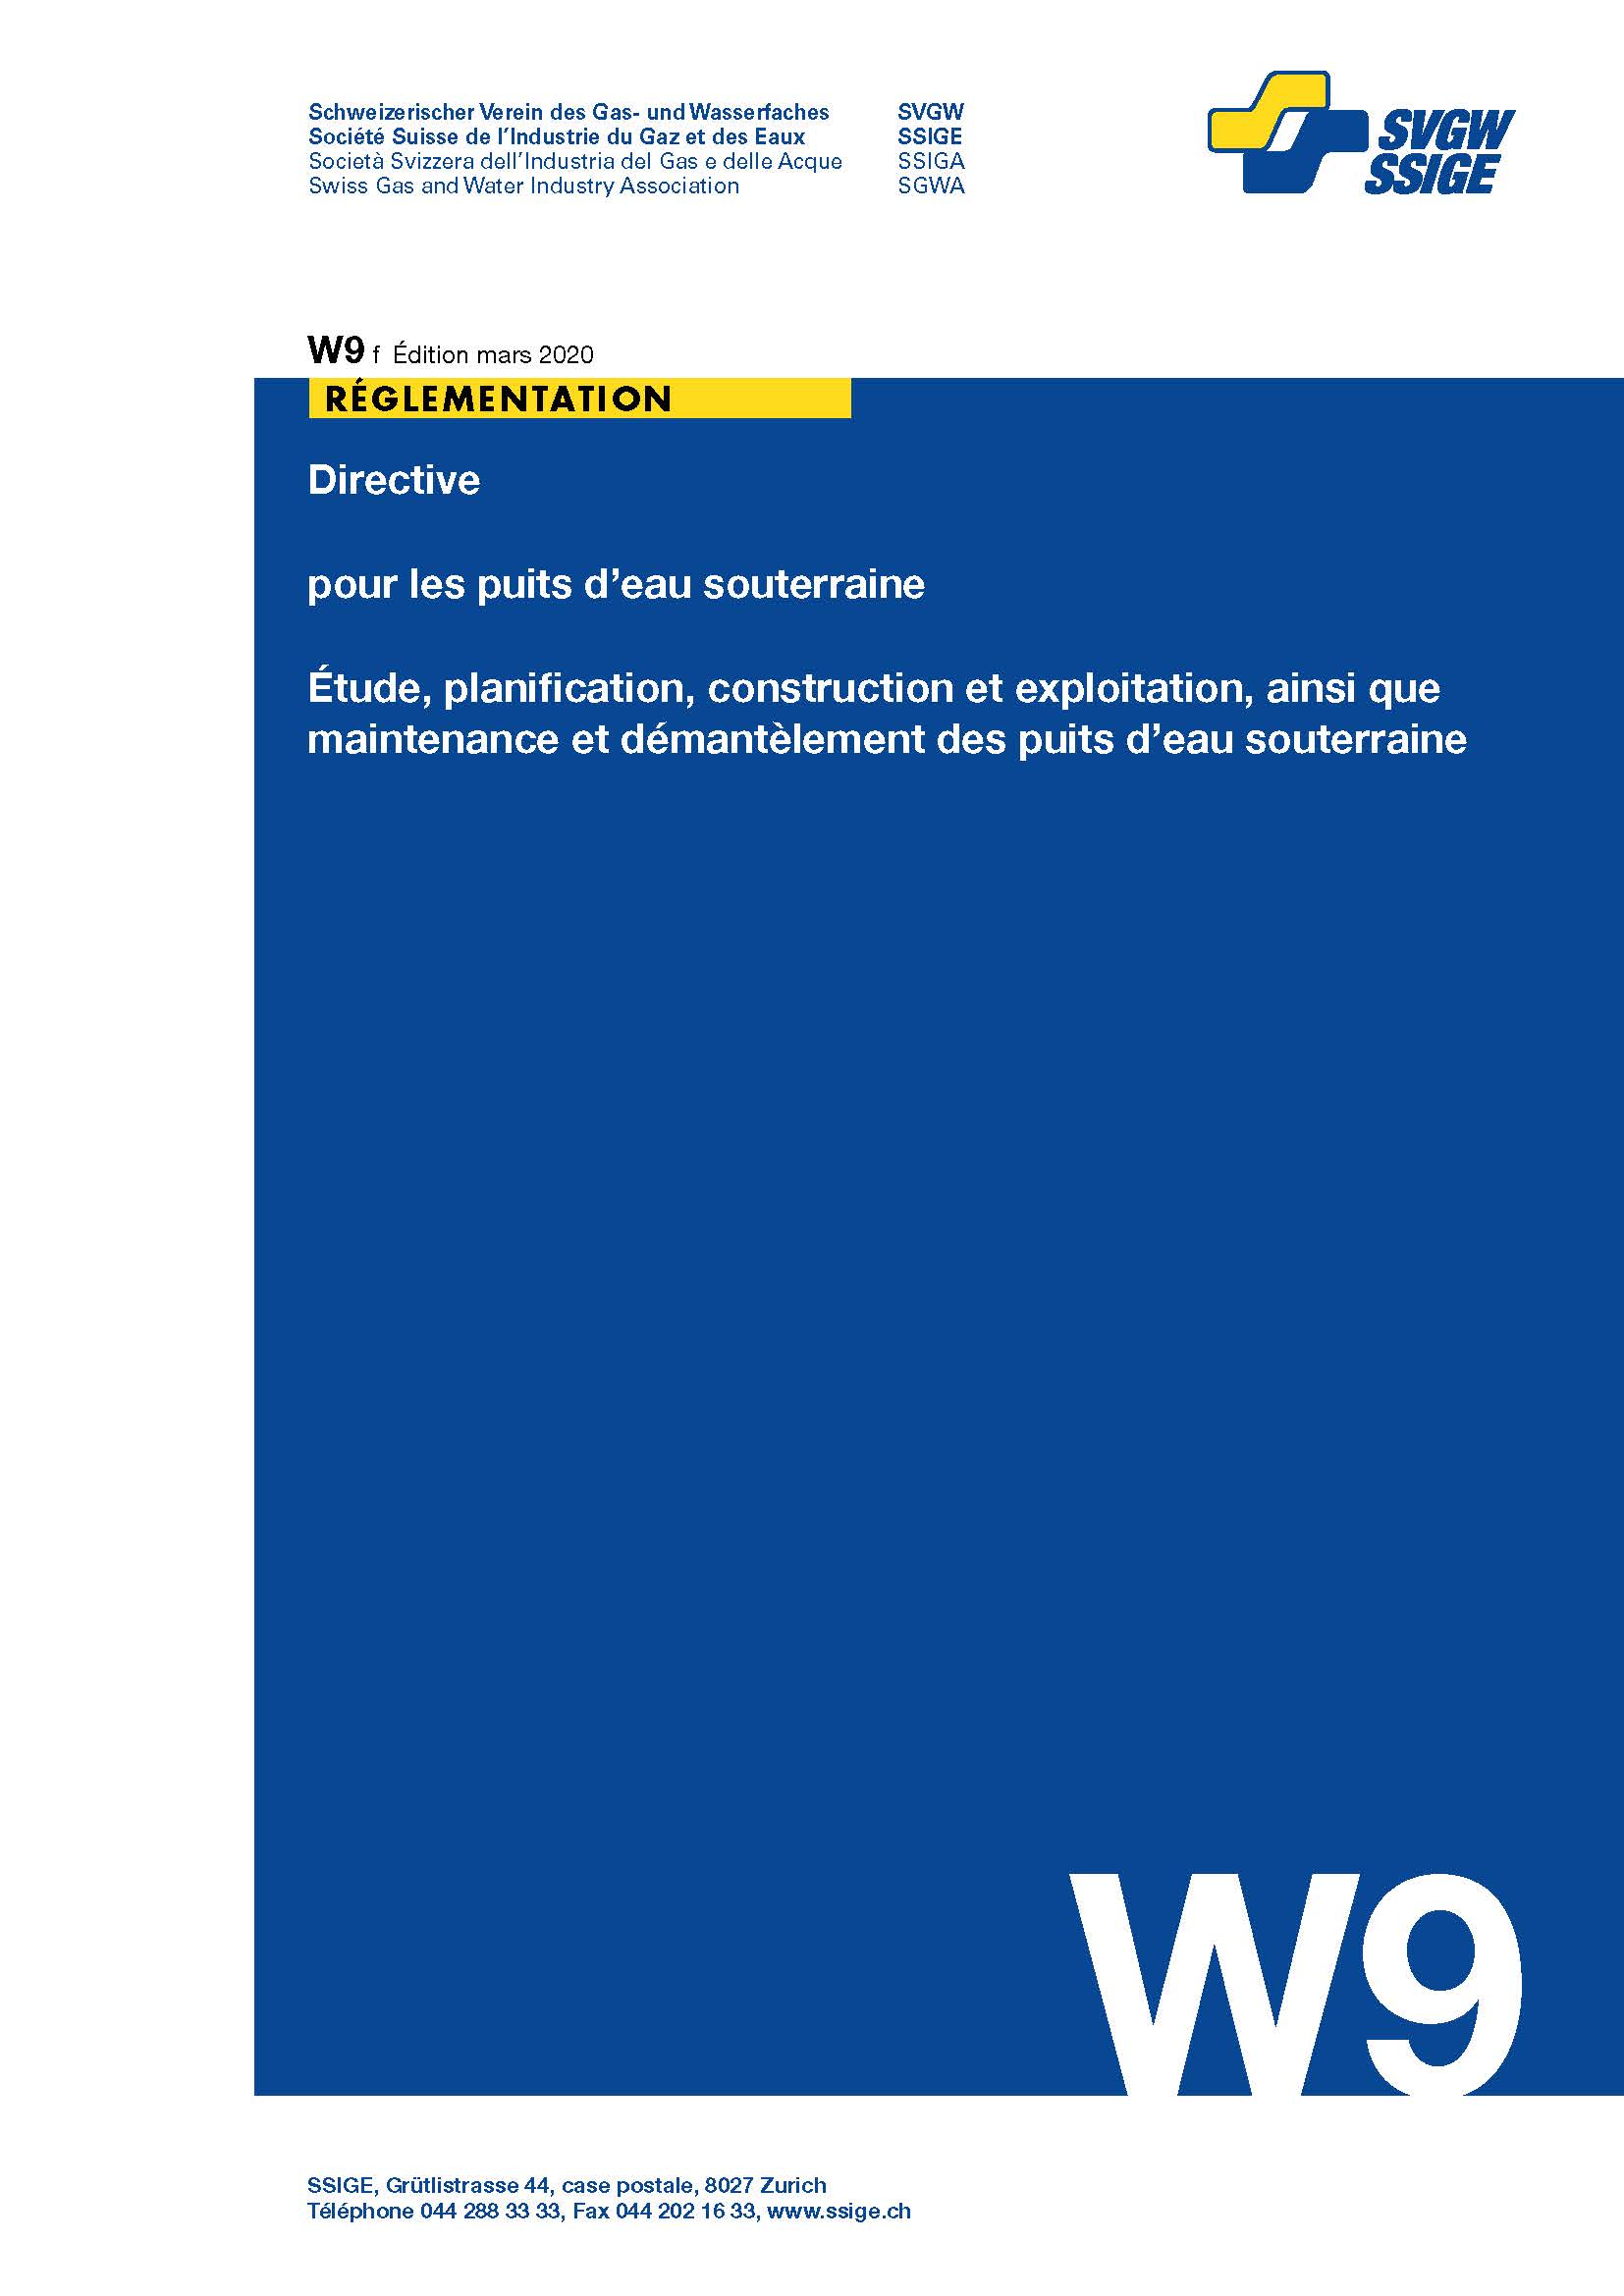 W9 f Directive pour les puits d'eau souterraine; Étude, planification, construction et exploitation, ainsi que maintenance et démantèlement des puits d'eau souterraine (1)